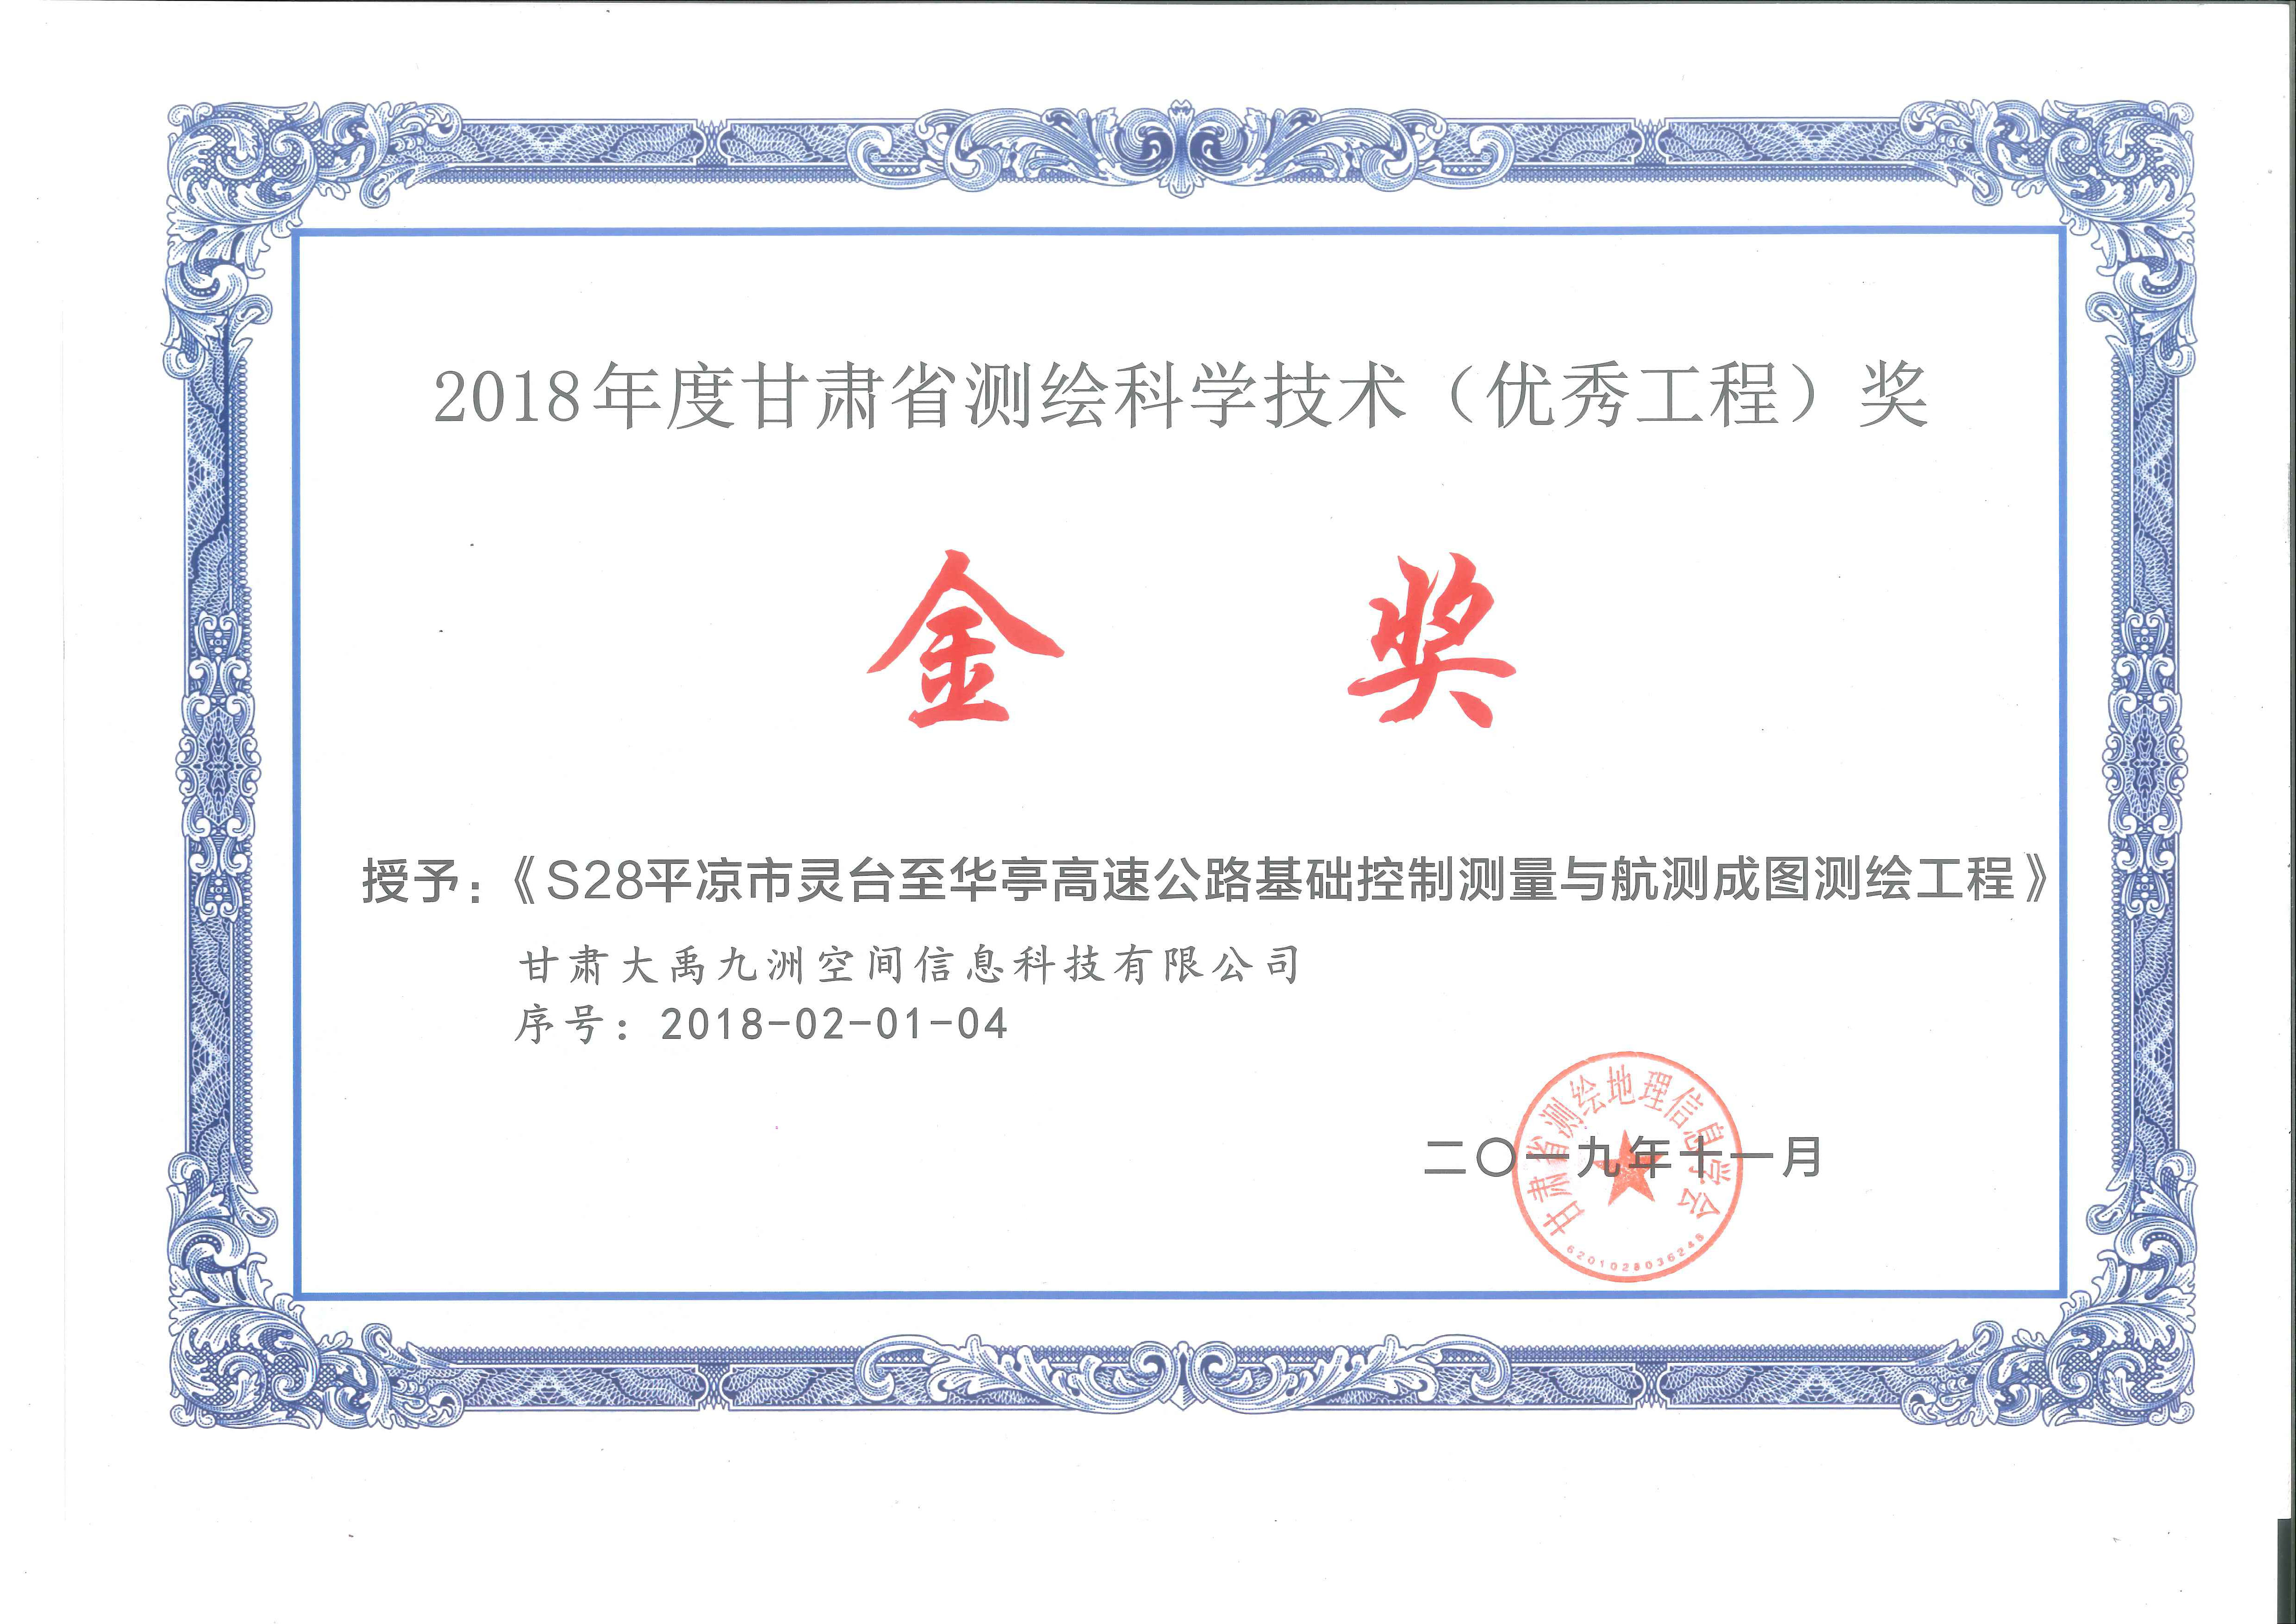 2018年度甘肃省测绘科学技术（优秀工程）奖金奖